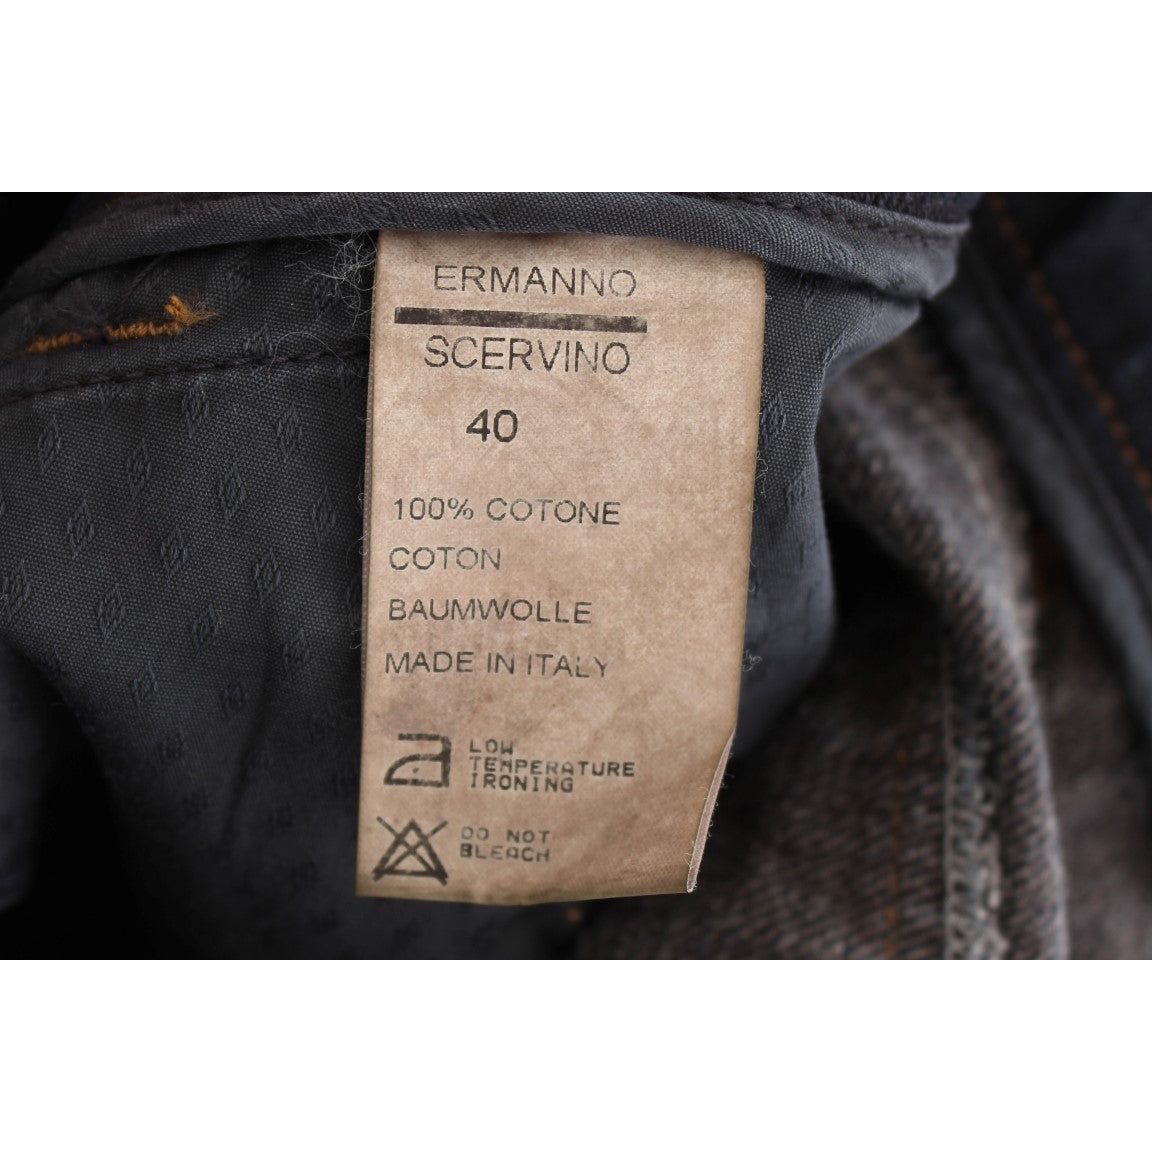 Ermanno Scervino Chic Slim Fit Italian Cotton Jeans blue-wash-cotton-slim-fit-jeans 318990-blue-wash-cotton-slim-fit-jeans-8.jpg